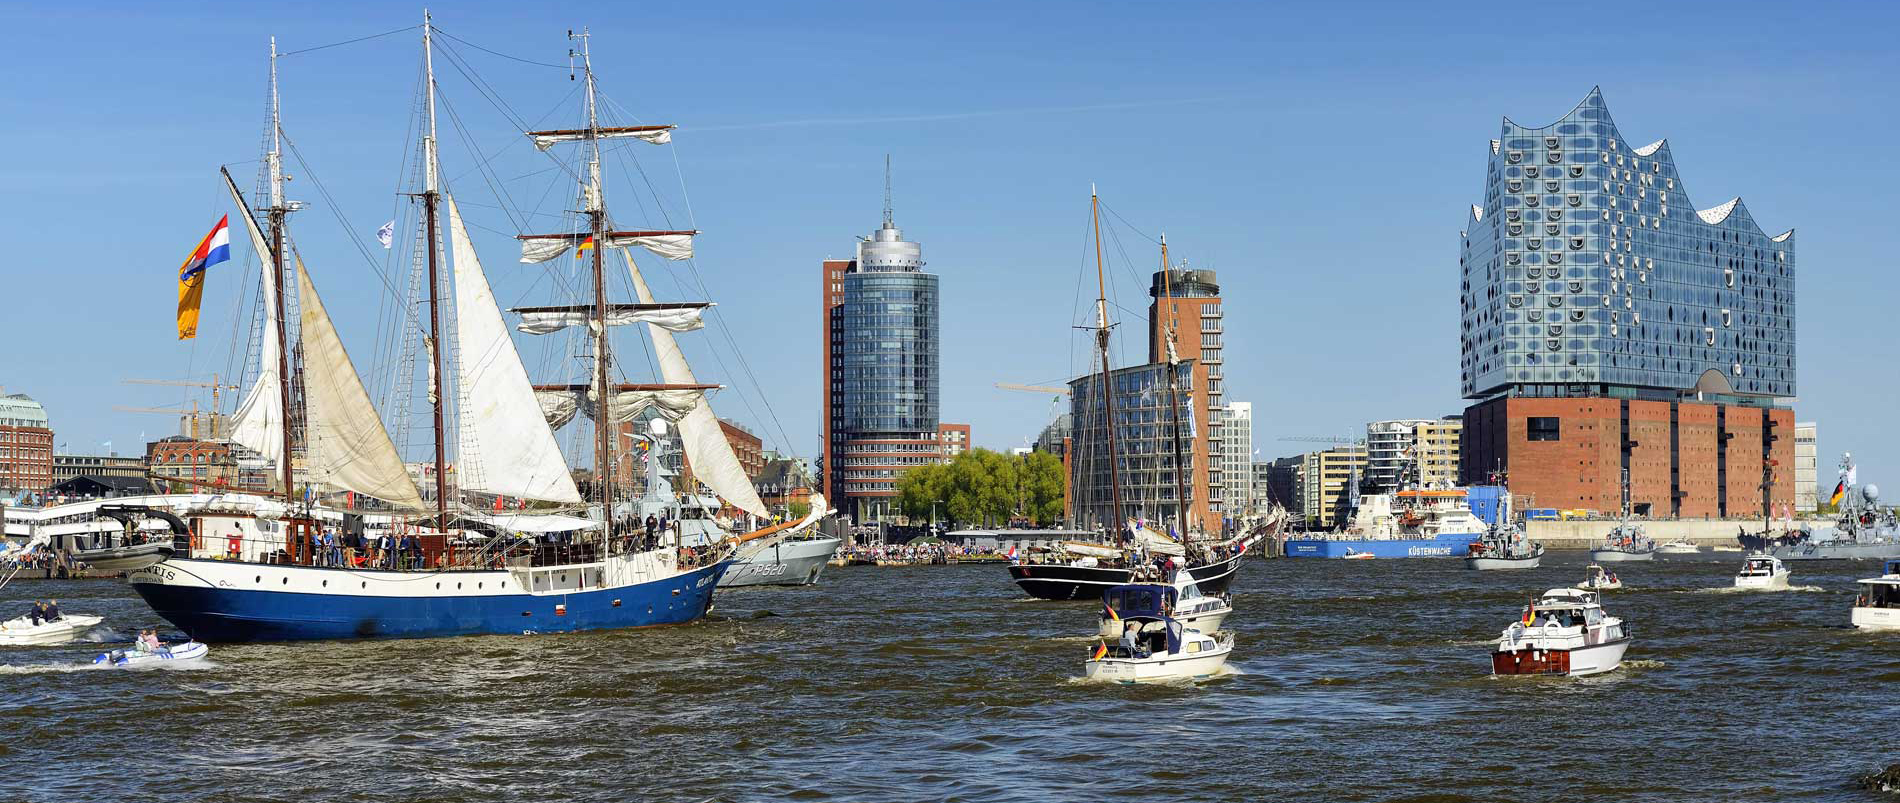 Bild der Elbe mit Elbphilharmonie und vielen Schiffen